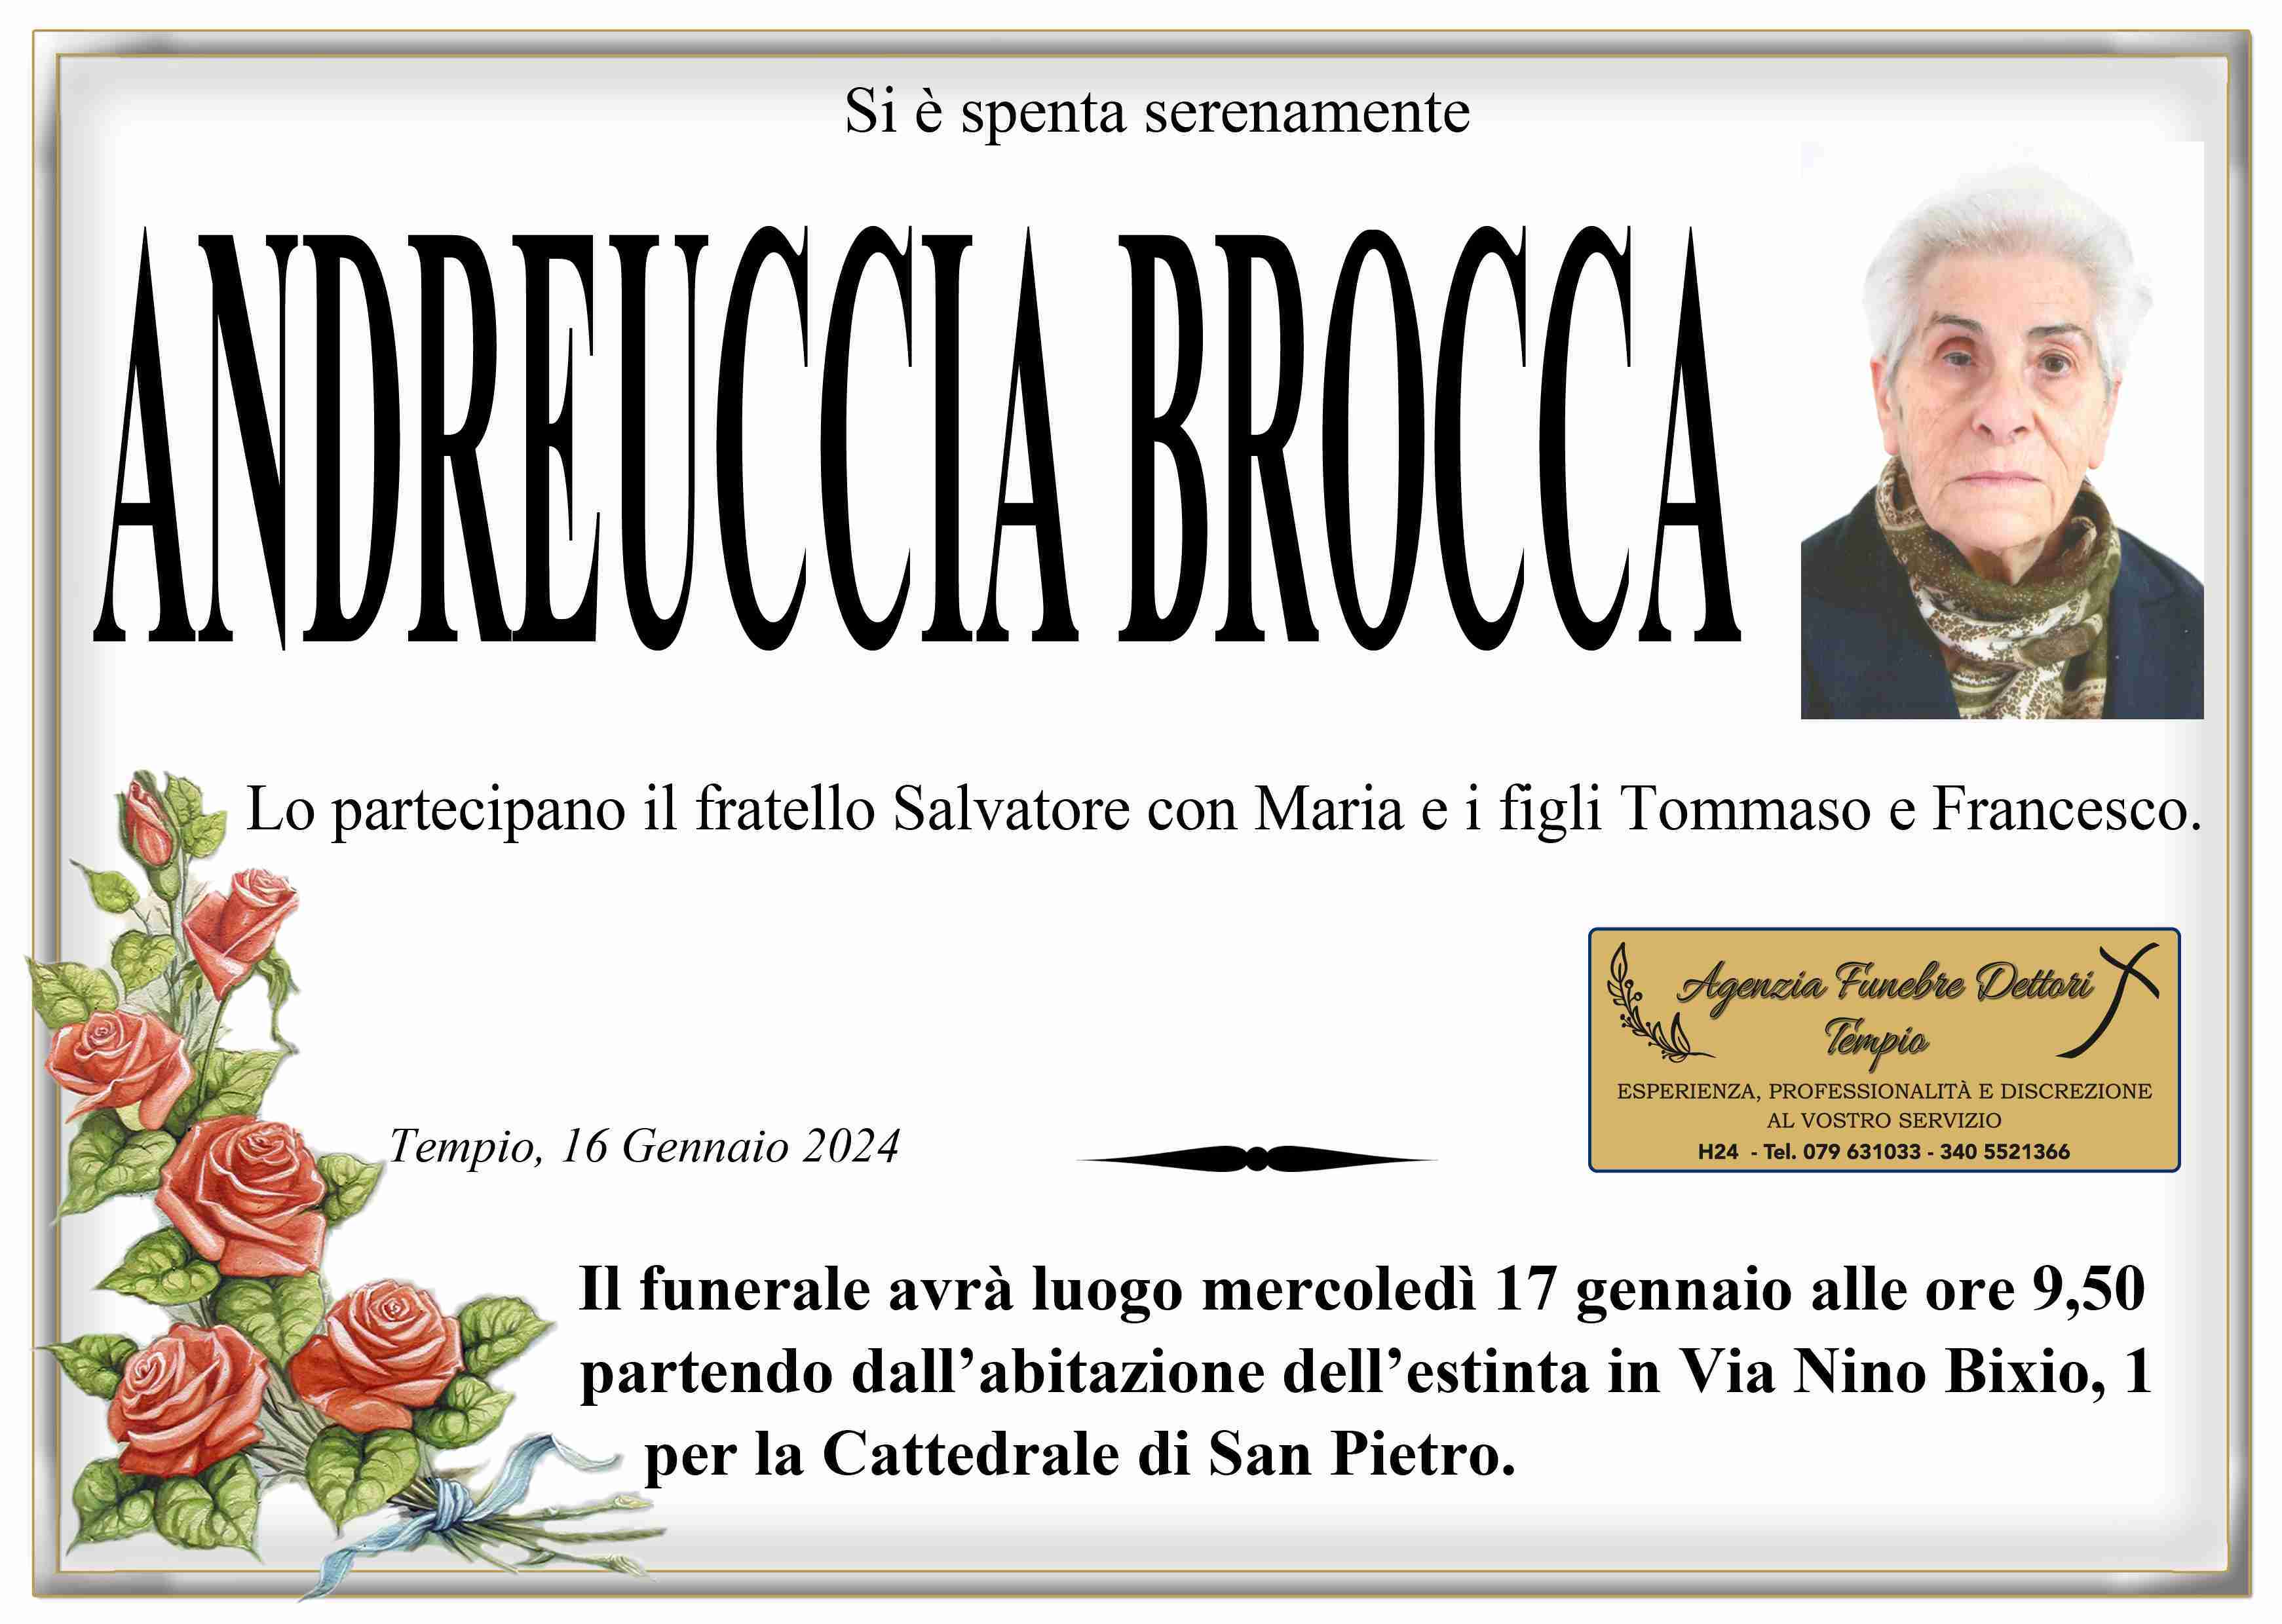 Andreuccia Brocca